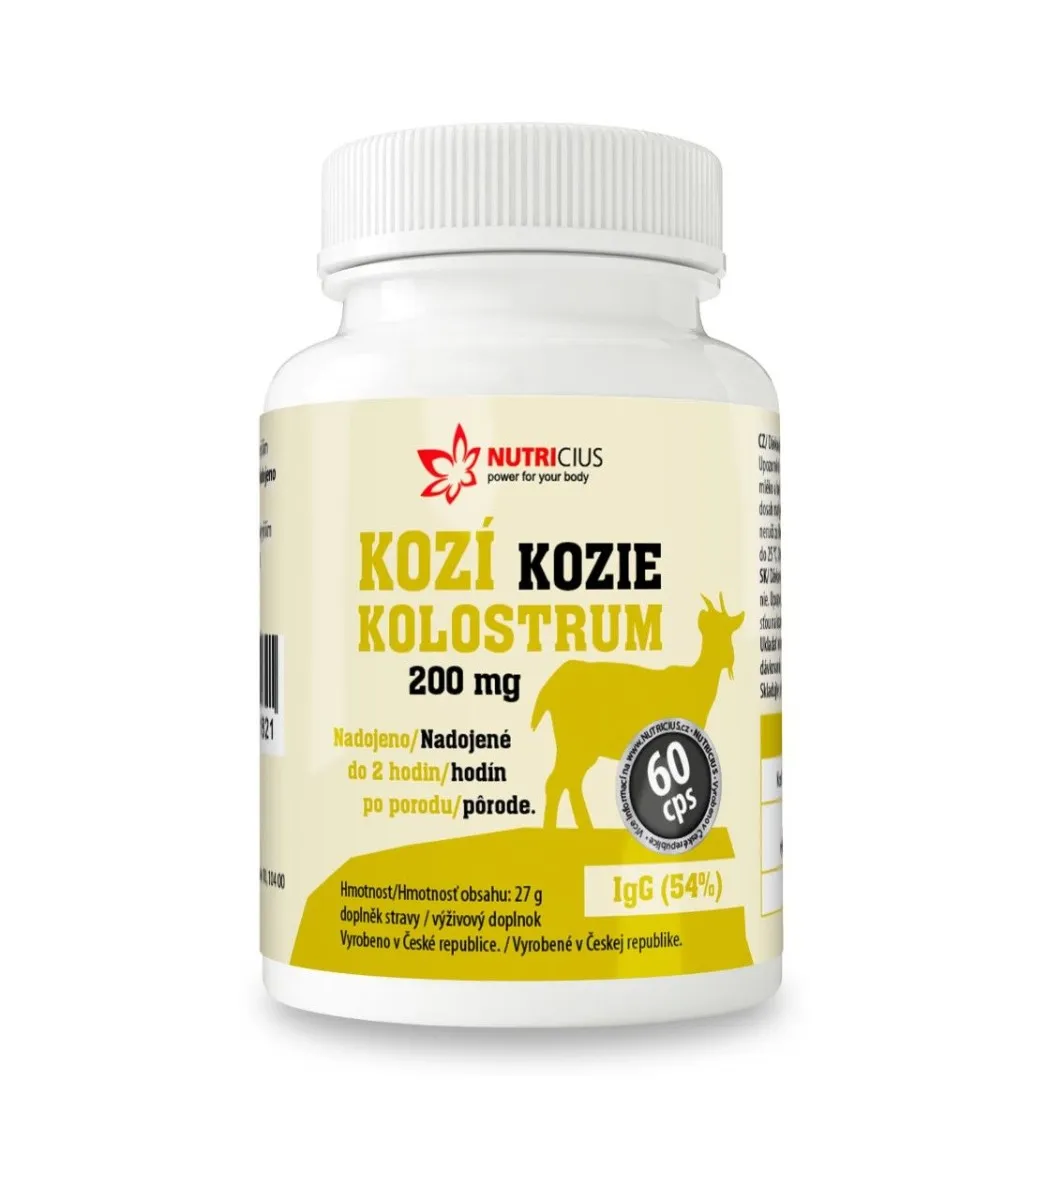 Nutricius Kozí kolostrum 200 mg IgG 54% 60 kapslí